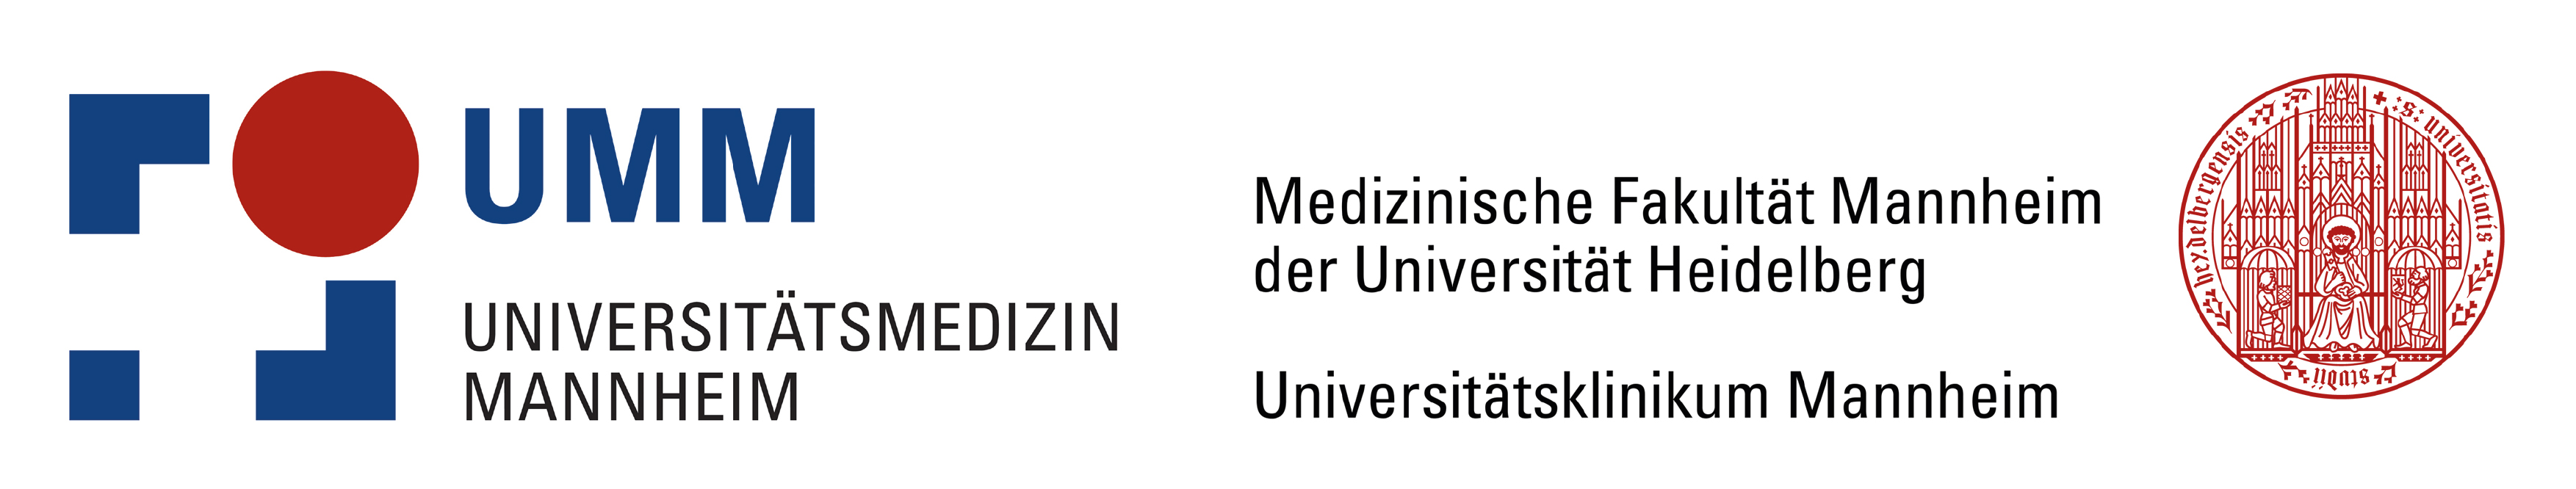 UMM Universitätsmedizin Mannheim